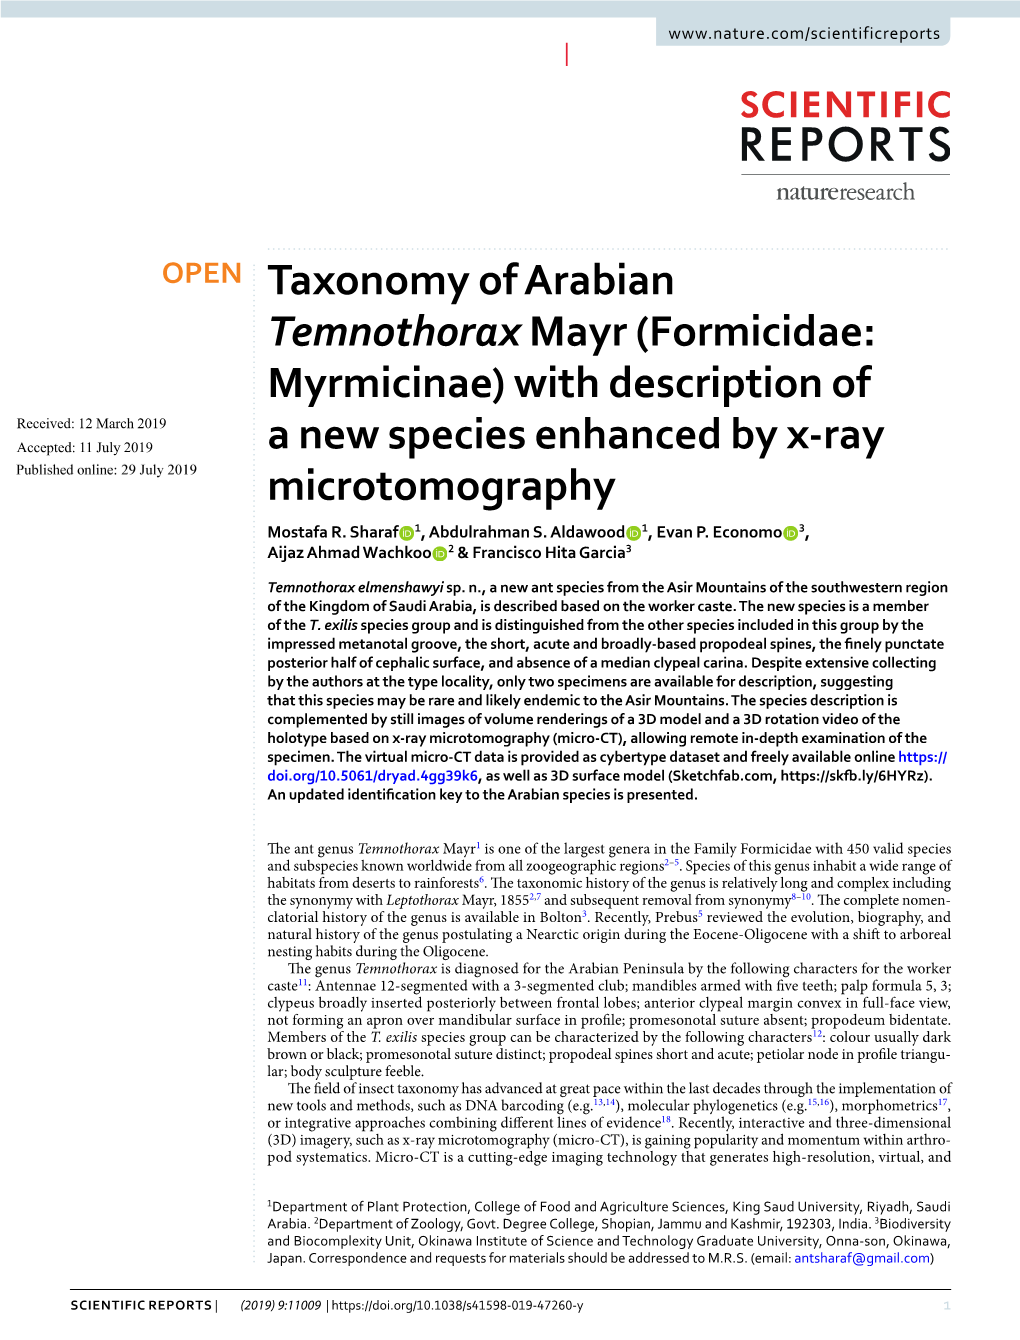 Taxonomy of Arabian Temnothorax Mayr (Formicidae: Myrmicinae)